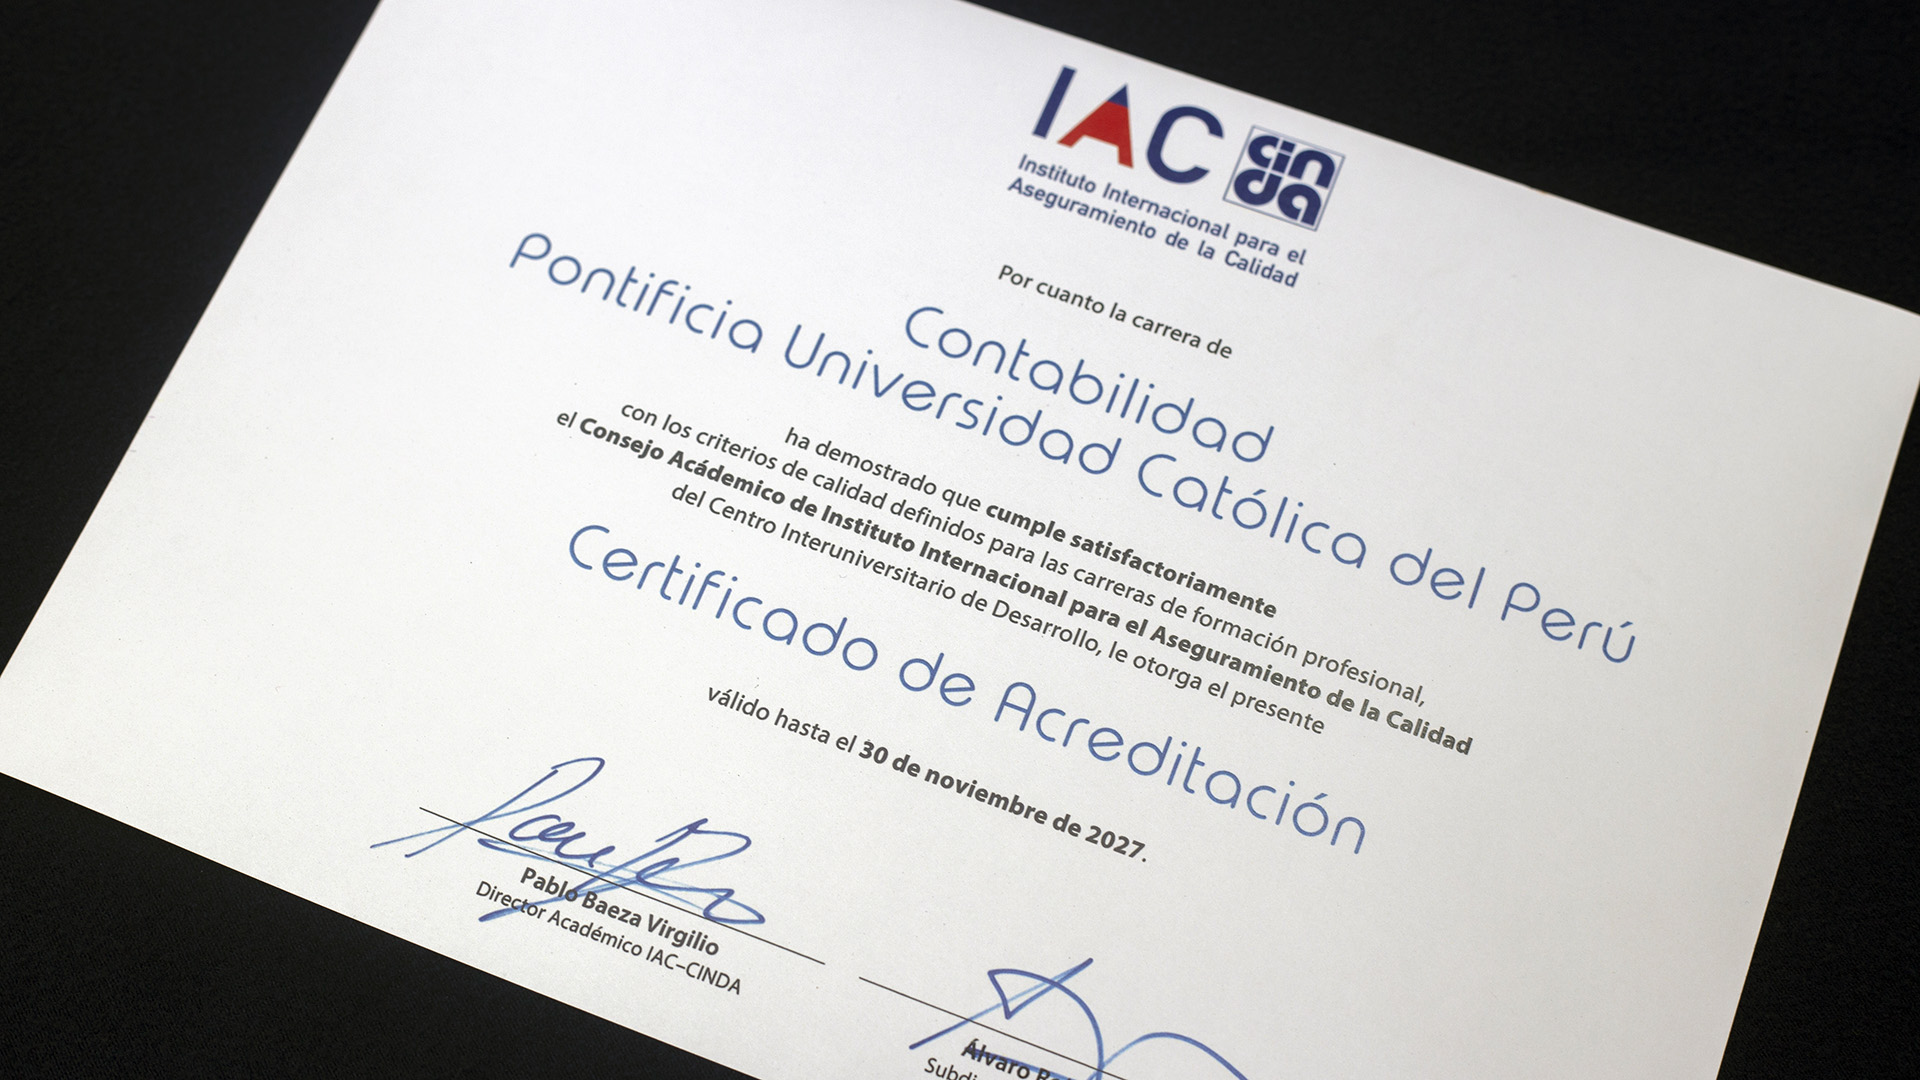 Diploma de reacreditación de contabilidad PUCP otorgado por IAC-CINDA